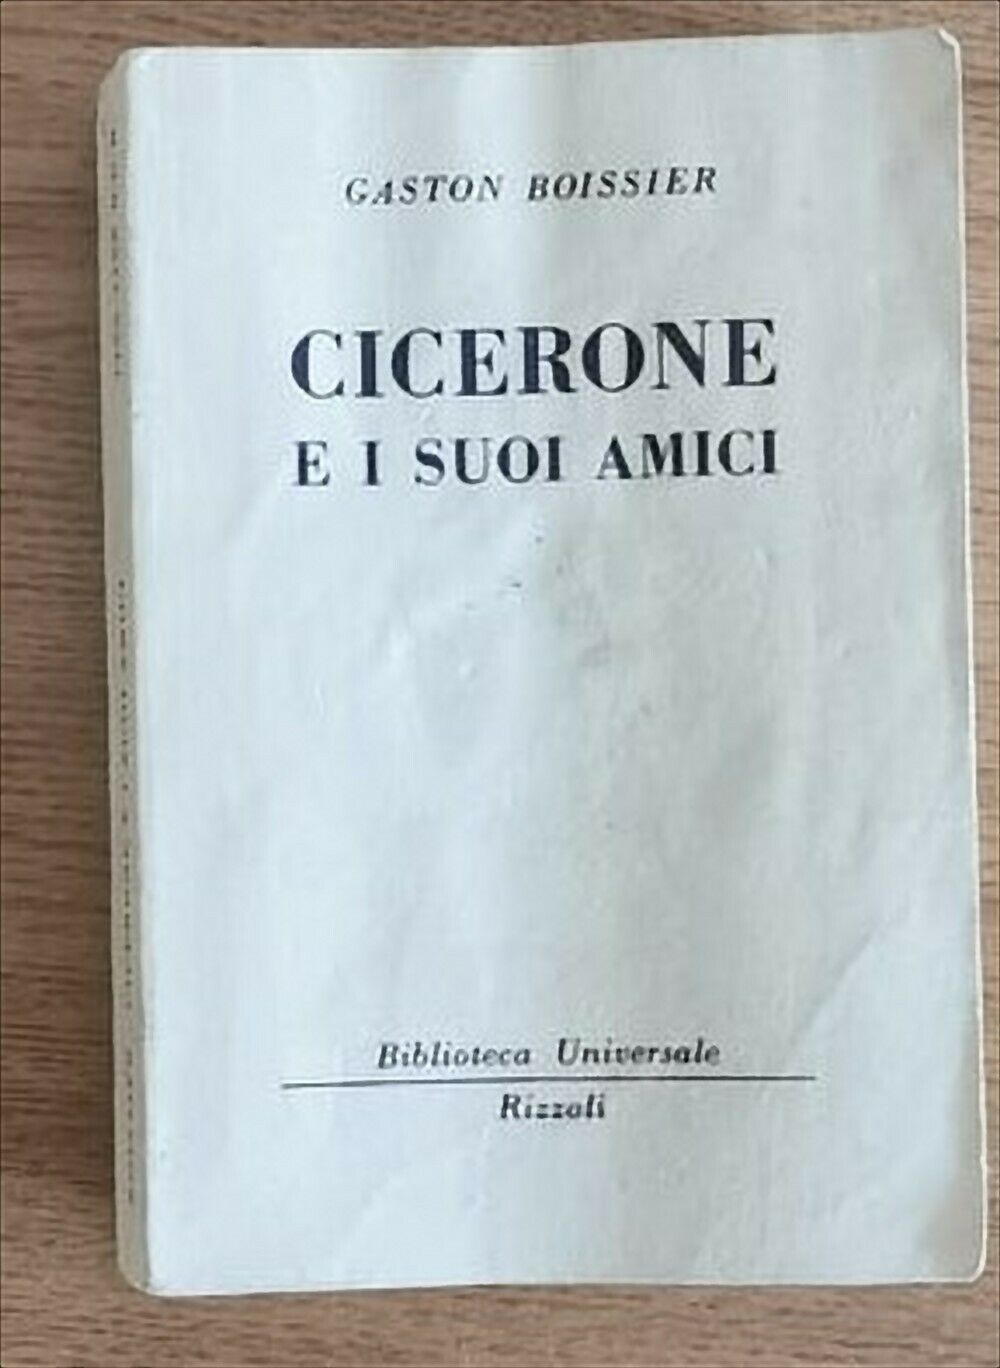 Cicerone e i suoi amici - G. Boissier - Rizzoli - 1959 - AR